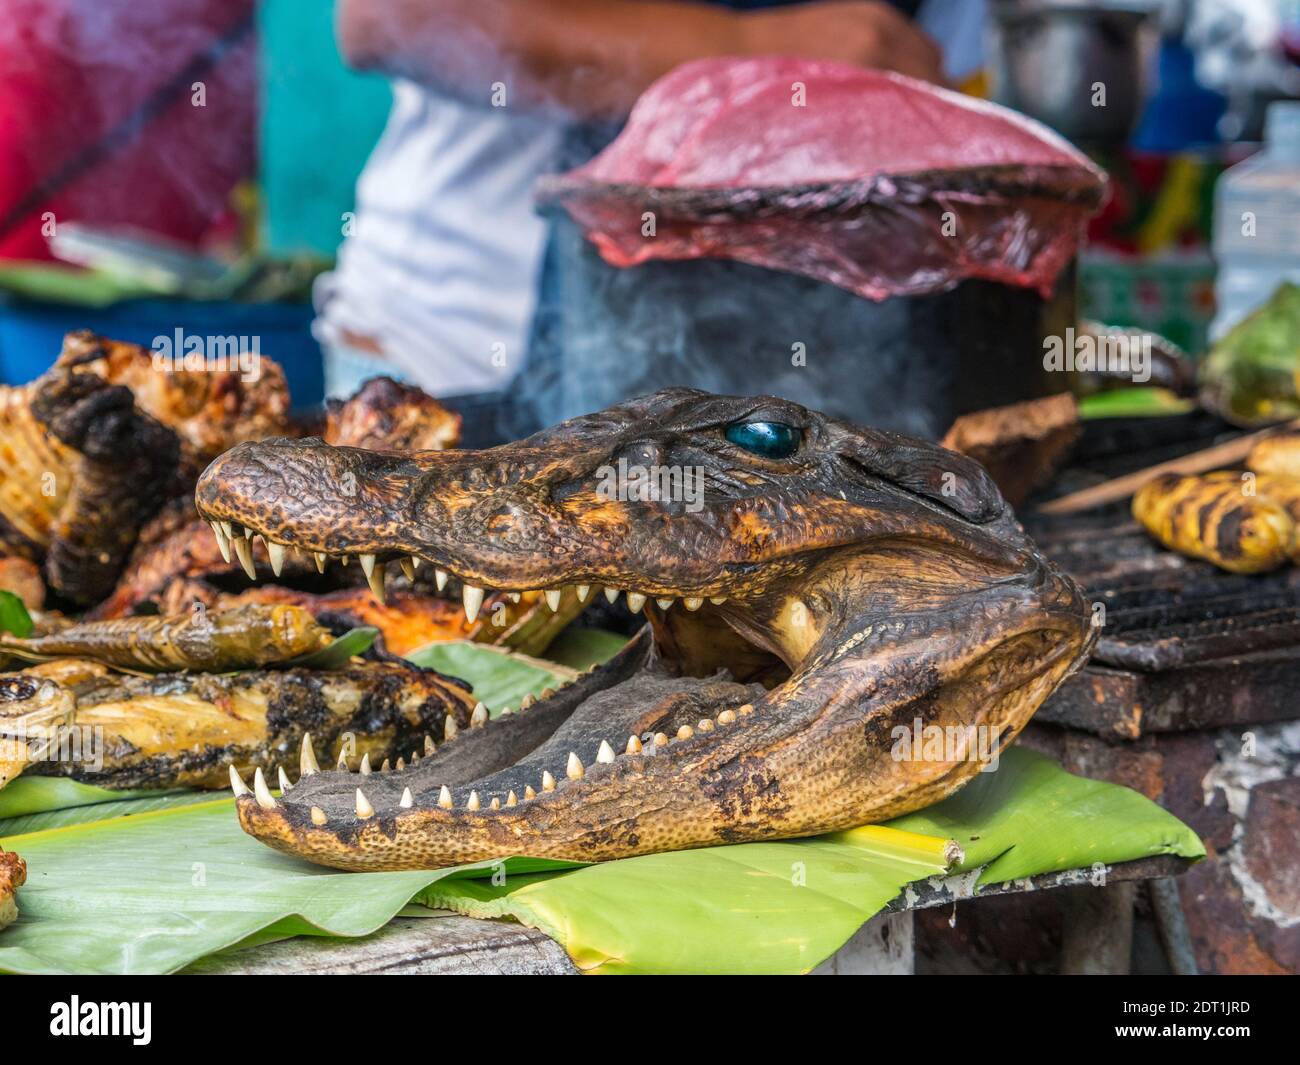 Cayman, pesce e altre prelibatezze alla griglia amazzonica al bazar Belavista di Iquitos, Perù Foto Stock